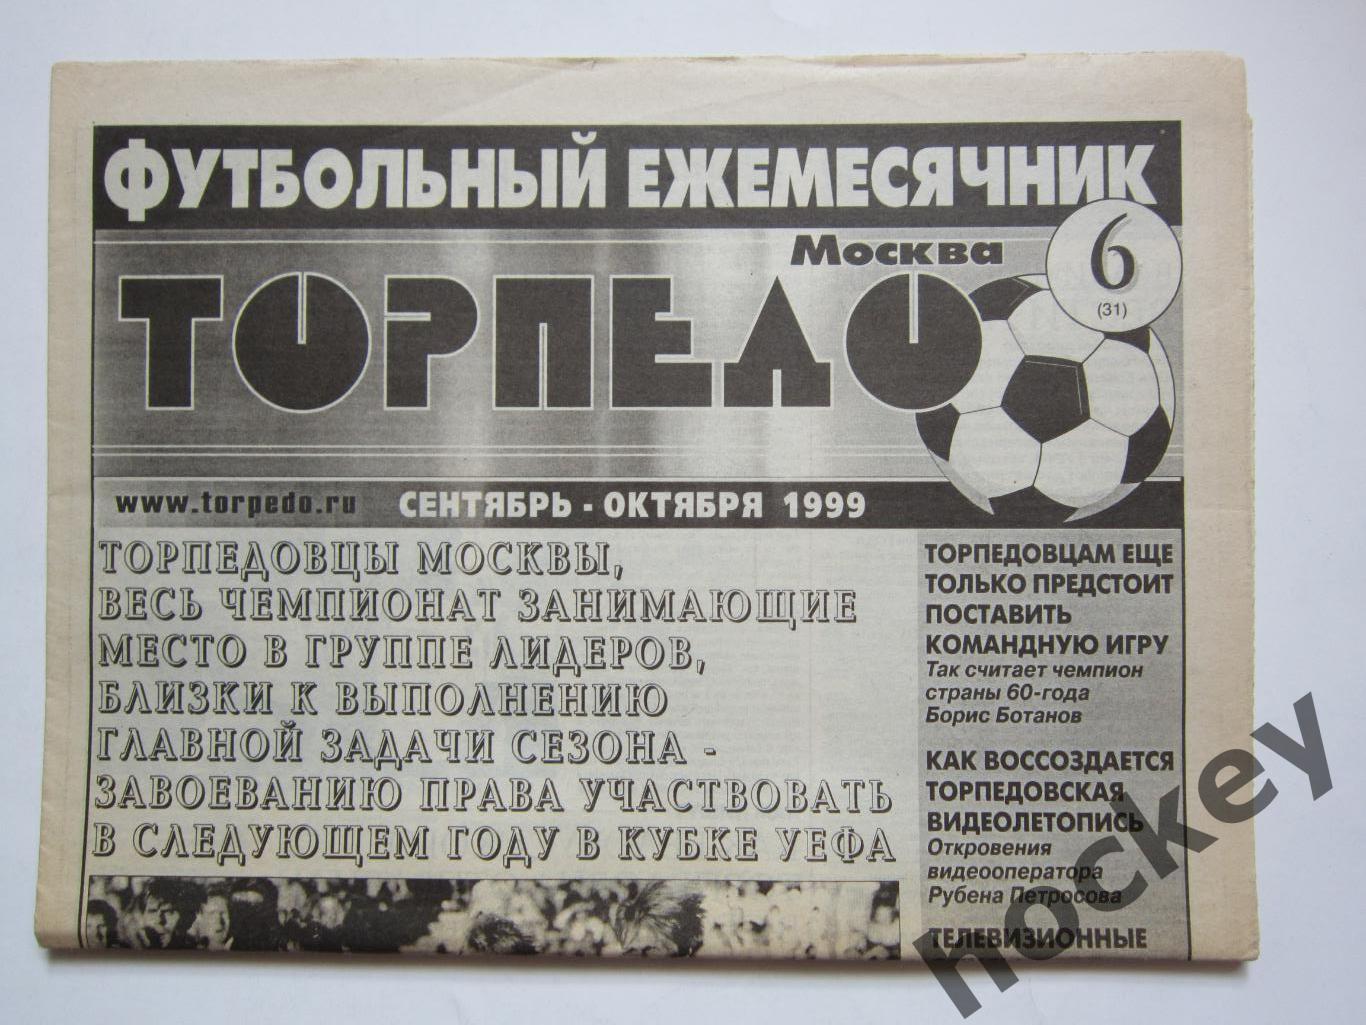 Футбольный ежемесячник Торпедо (Москва). №6 (31). 1999 год (сентябрь-октябрь)